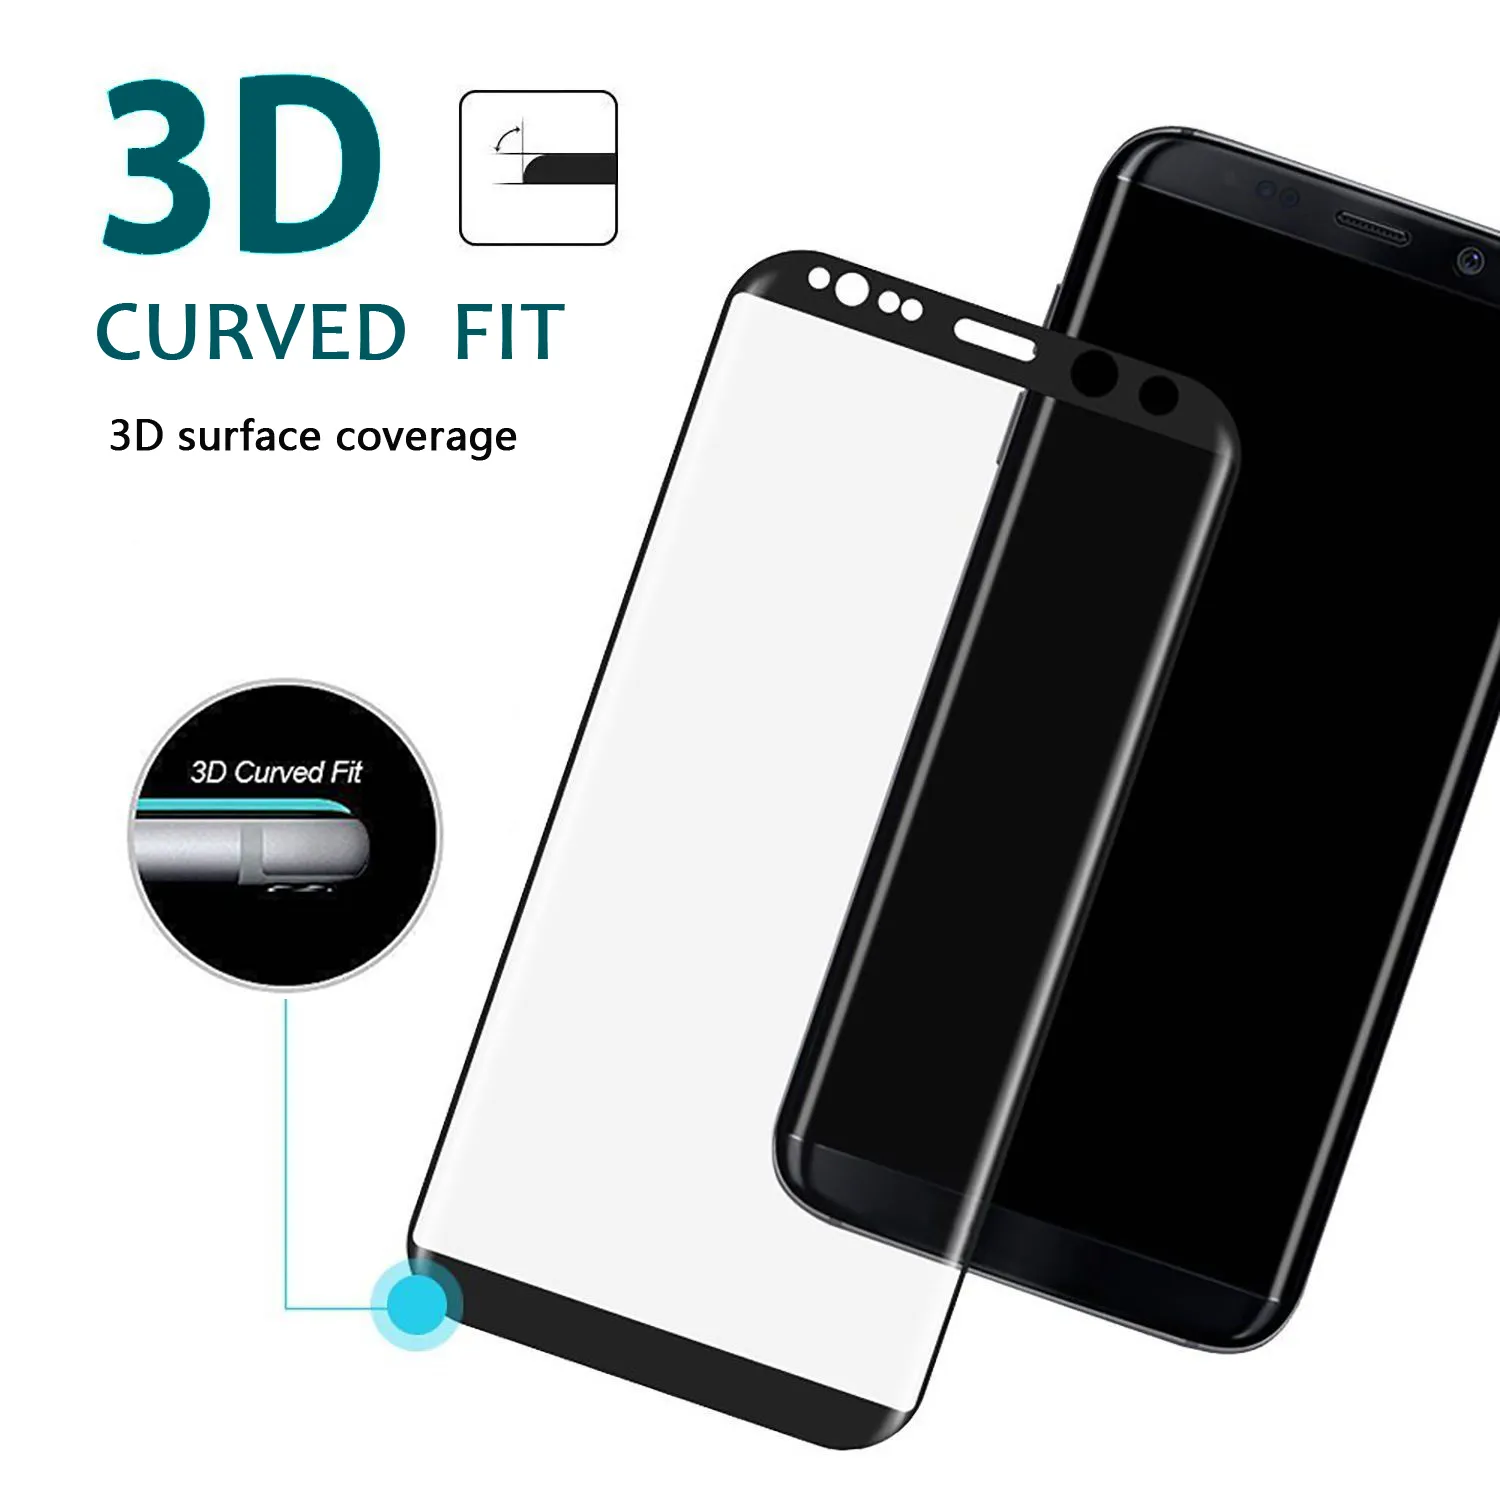 Samsung Galaxy J2 J7 J7 Prime C5 C7 C9 A3 A5 A7スクリーンプロテクターのための3D炭素繊維フルカバー強化ガラス